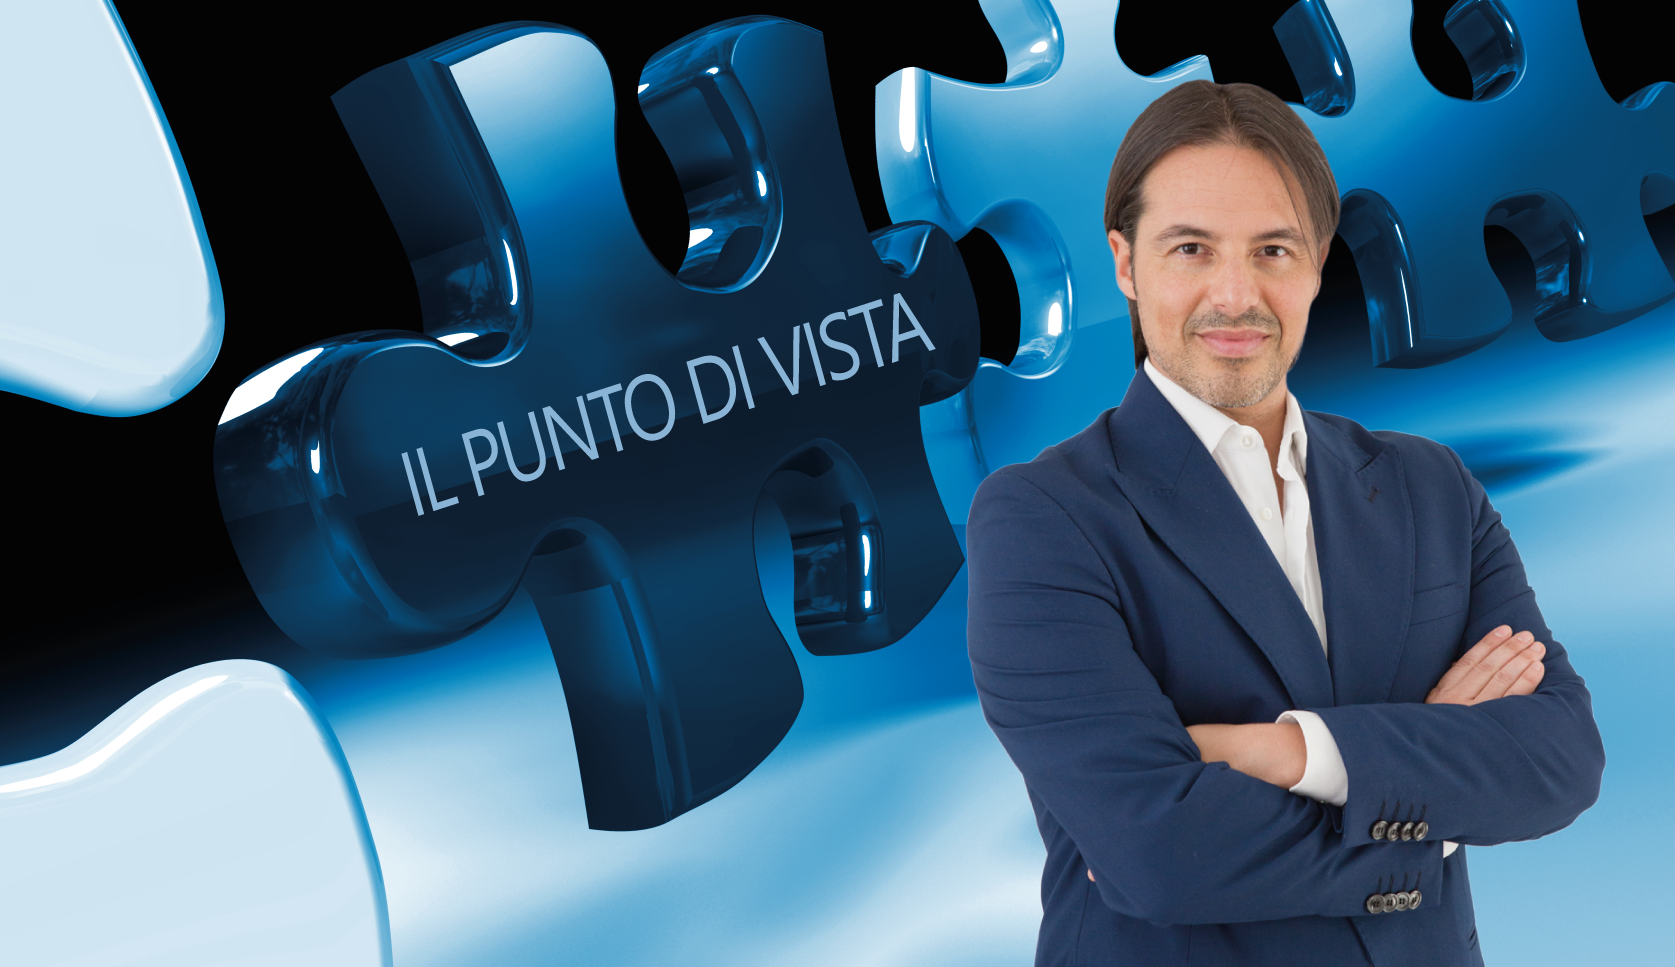 IL PUNTO DI VISTA_Intervista Davide Merletto, Docente, Senior Business and Executive Coach